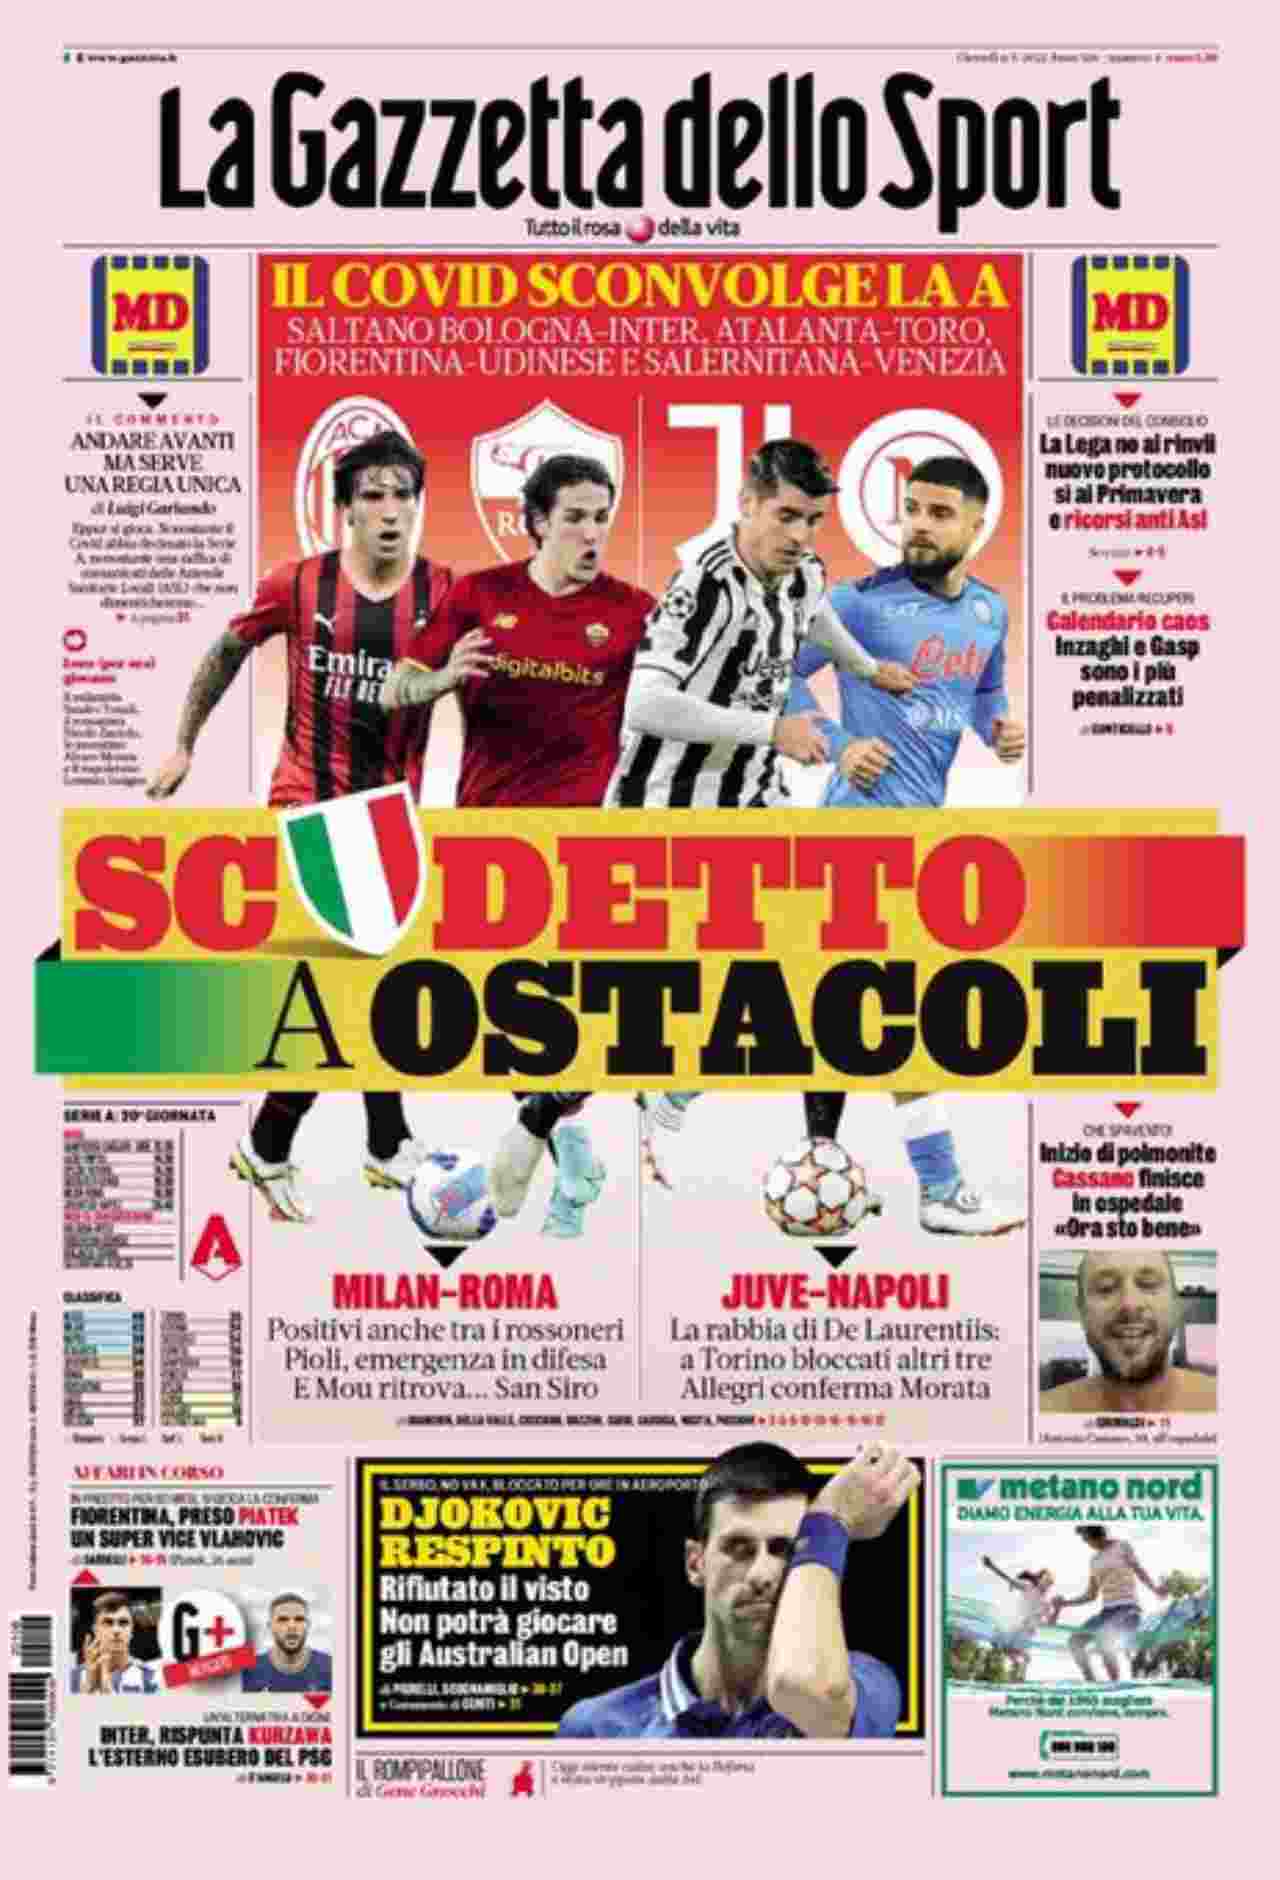 La Gazzetta dello Sport 6 gennaio | "Scudetto a ostacoli"